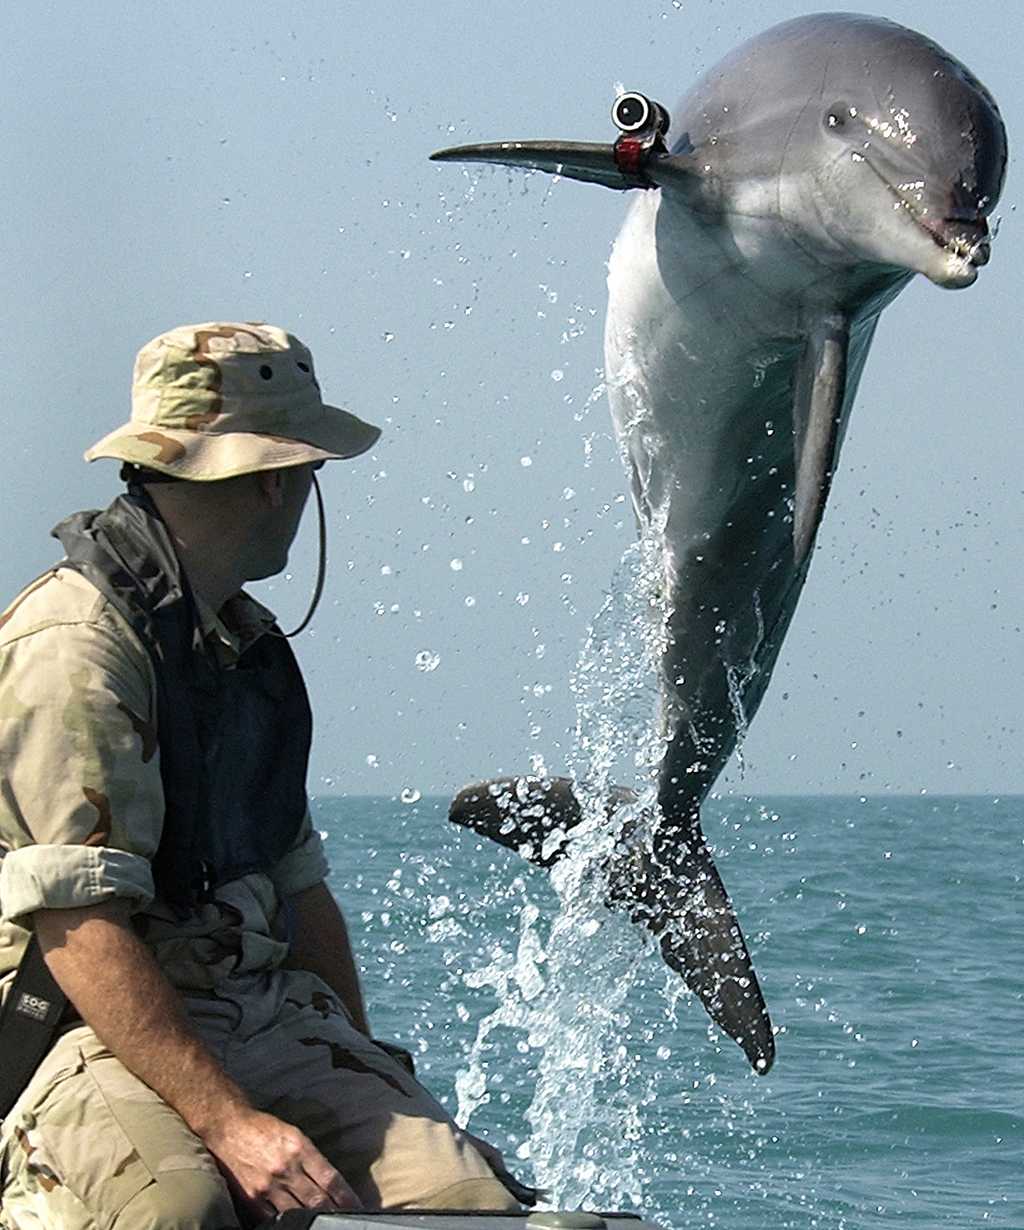 Un grand dauphin du&nbsp;Programme de mammifères marins de l’US Navy porte une balise de localisation. Il est entraîné à détecter les mines, ou toute autre arme de guerre. ©&nbsp;United States Navy